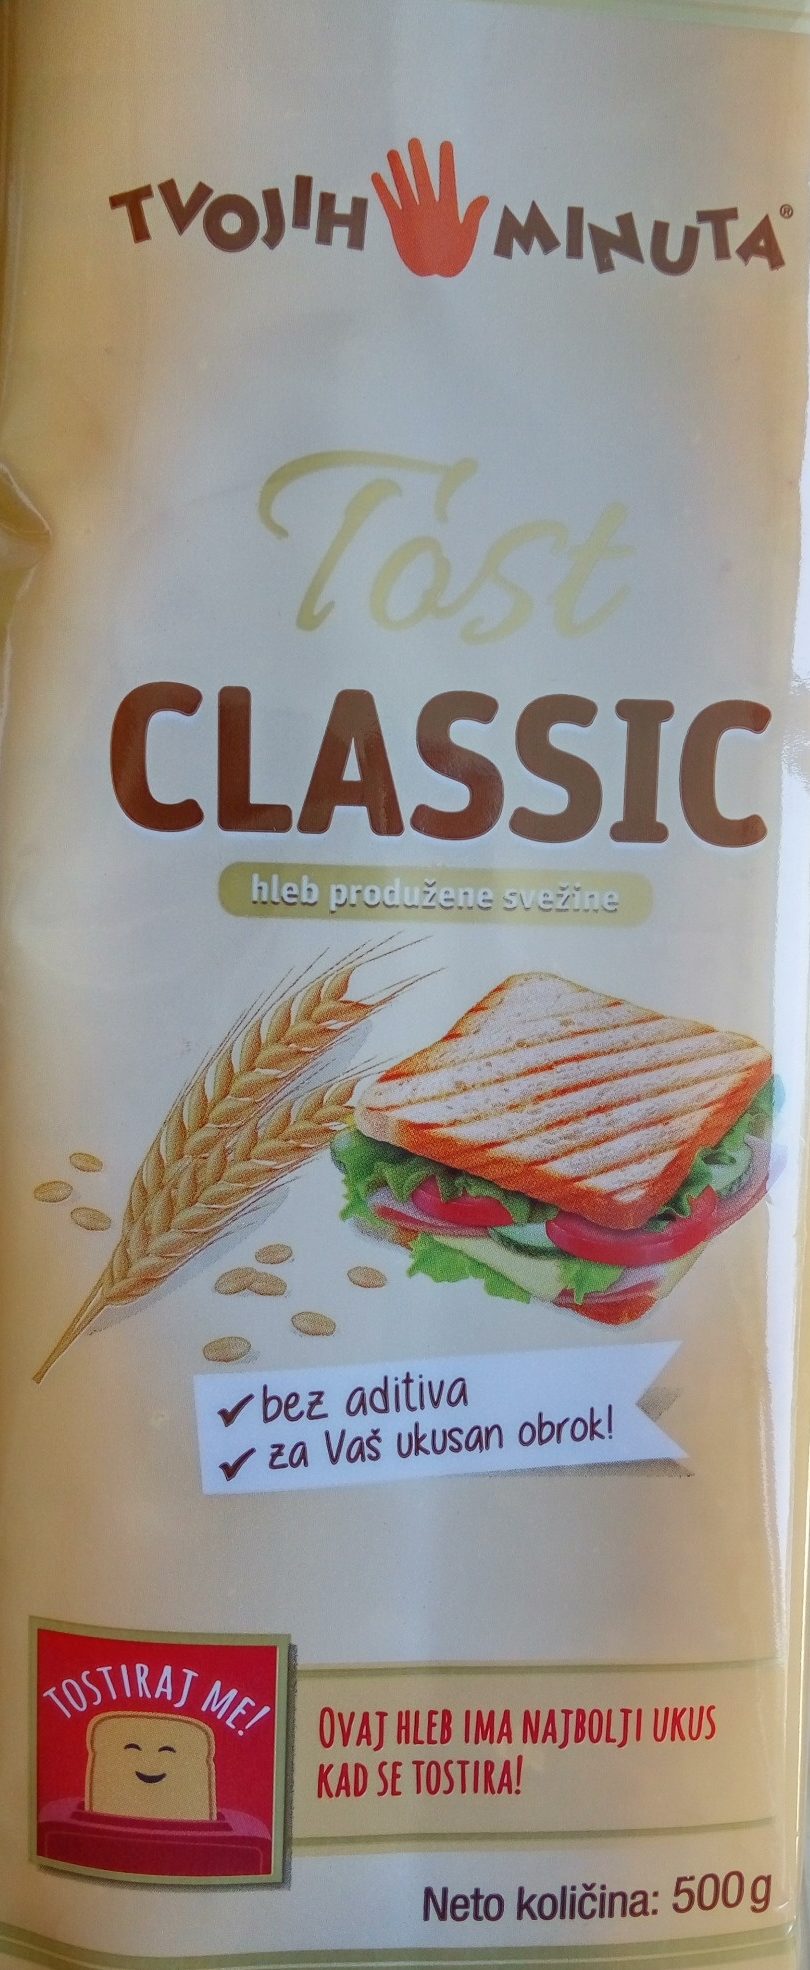 Tost classic - Производ